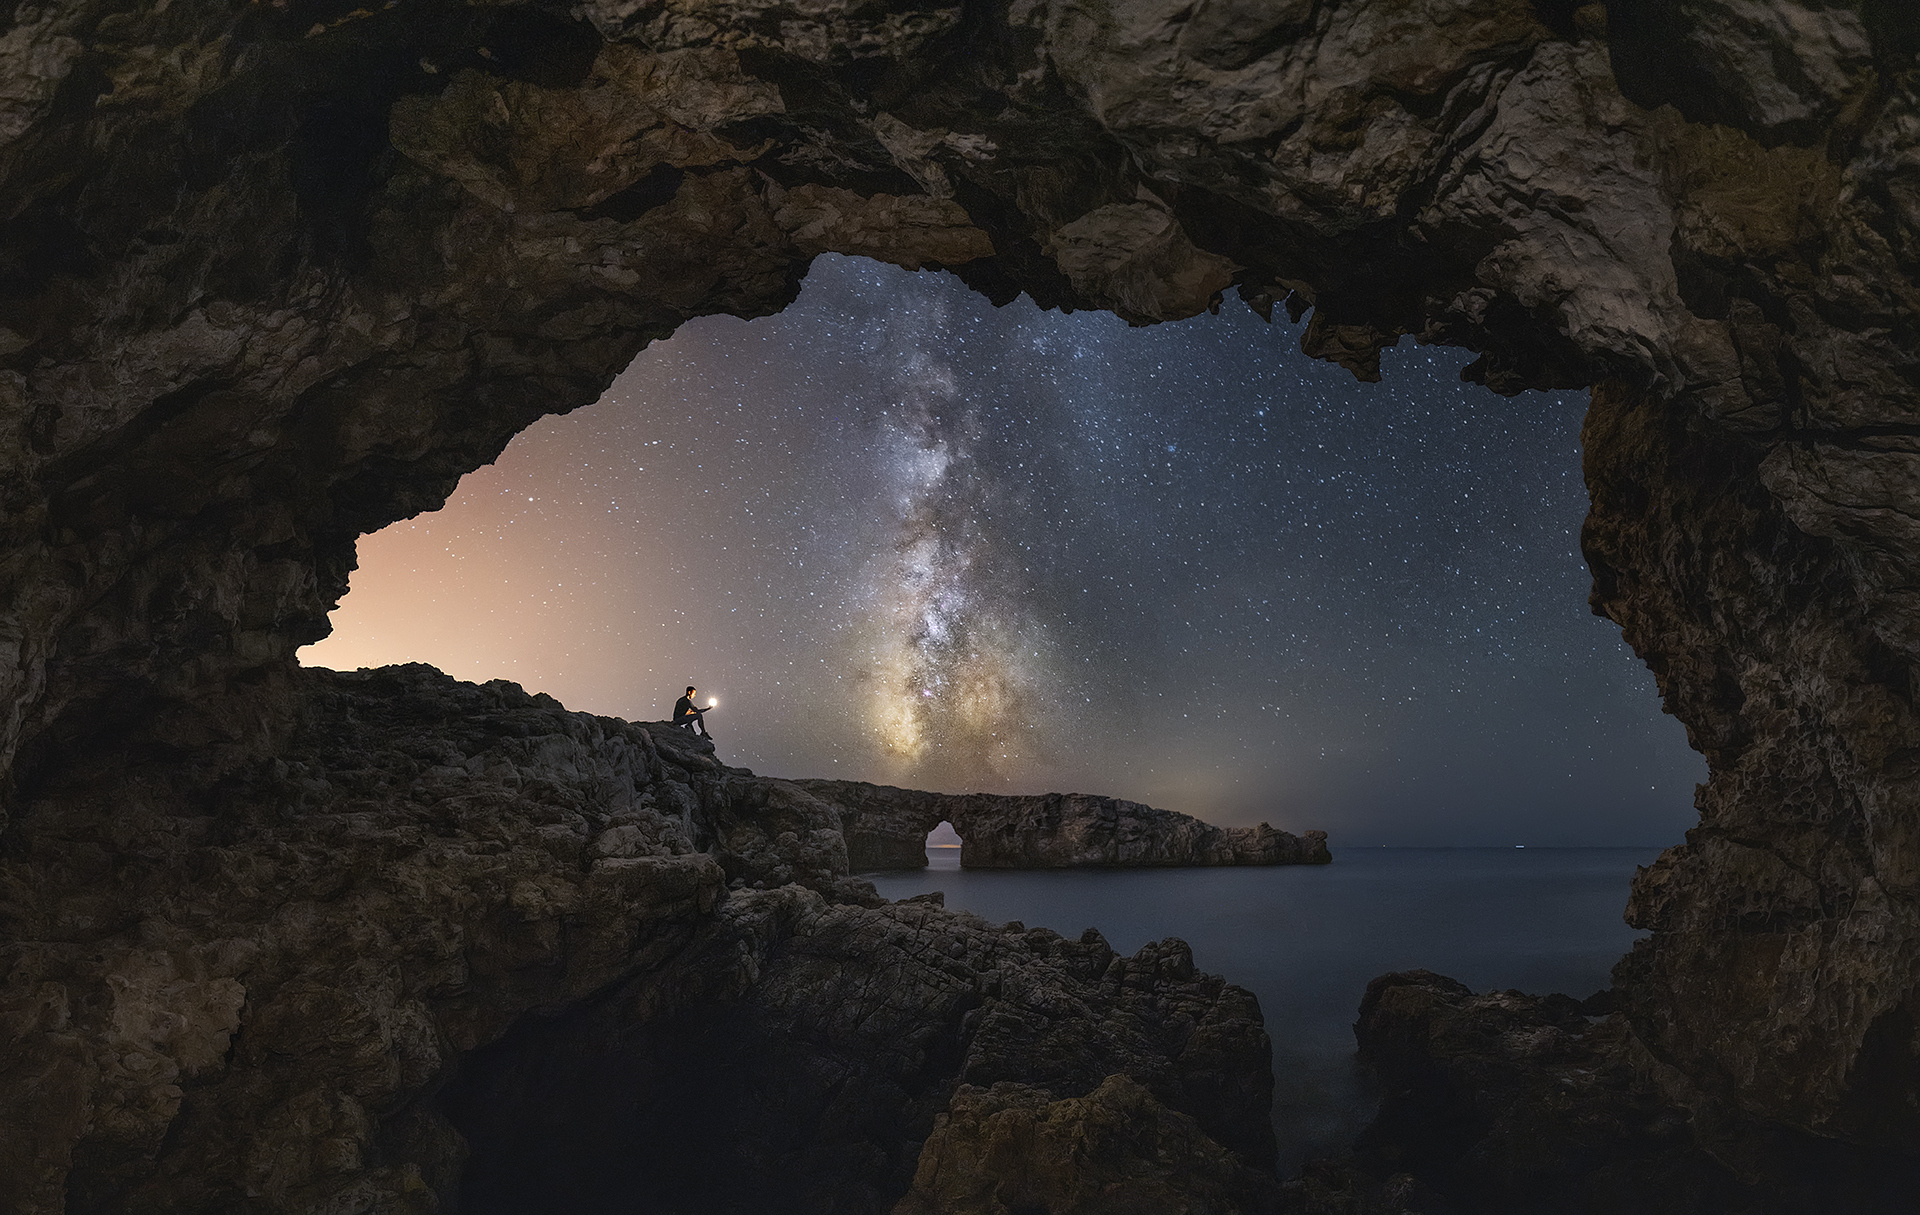 concurso fotografía nocturna Menorca Starlight